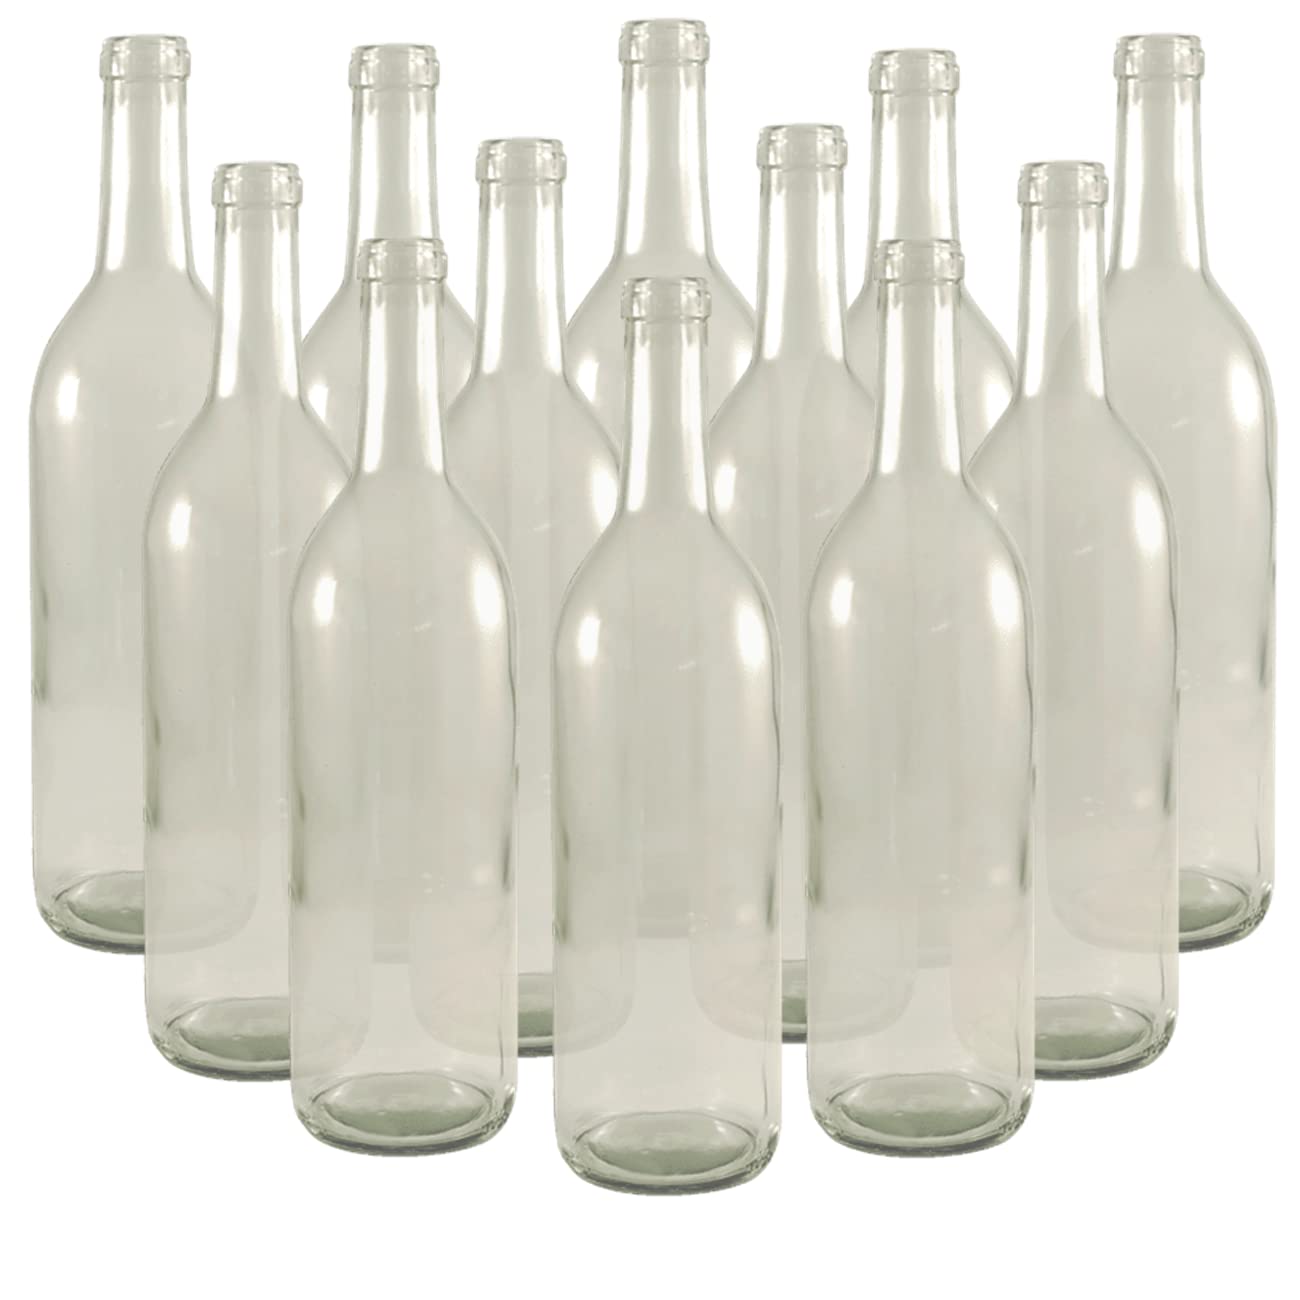 FastRack – W5 Wine Bottles, Bordeaux Liquor Bottles, Clear Wine Bottles, 750 ml Empty Bottles, Empty Bottles for Drinks, Clear/Flint Bordeaux Wine…